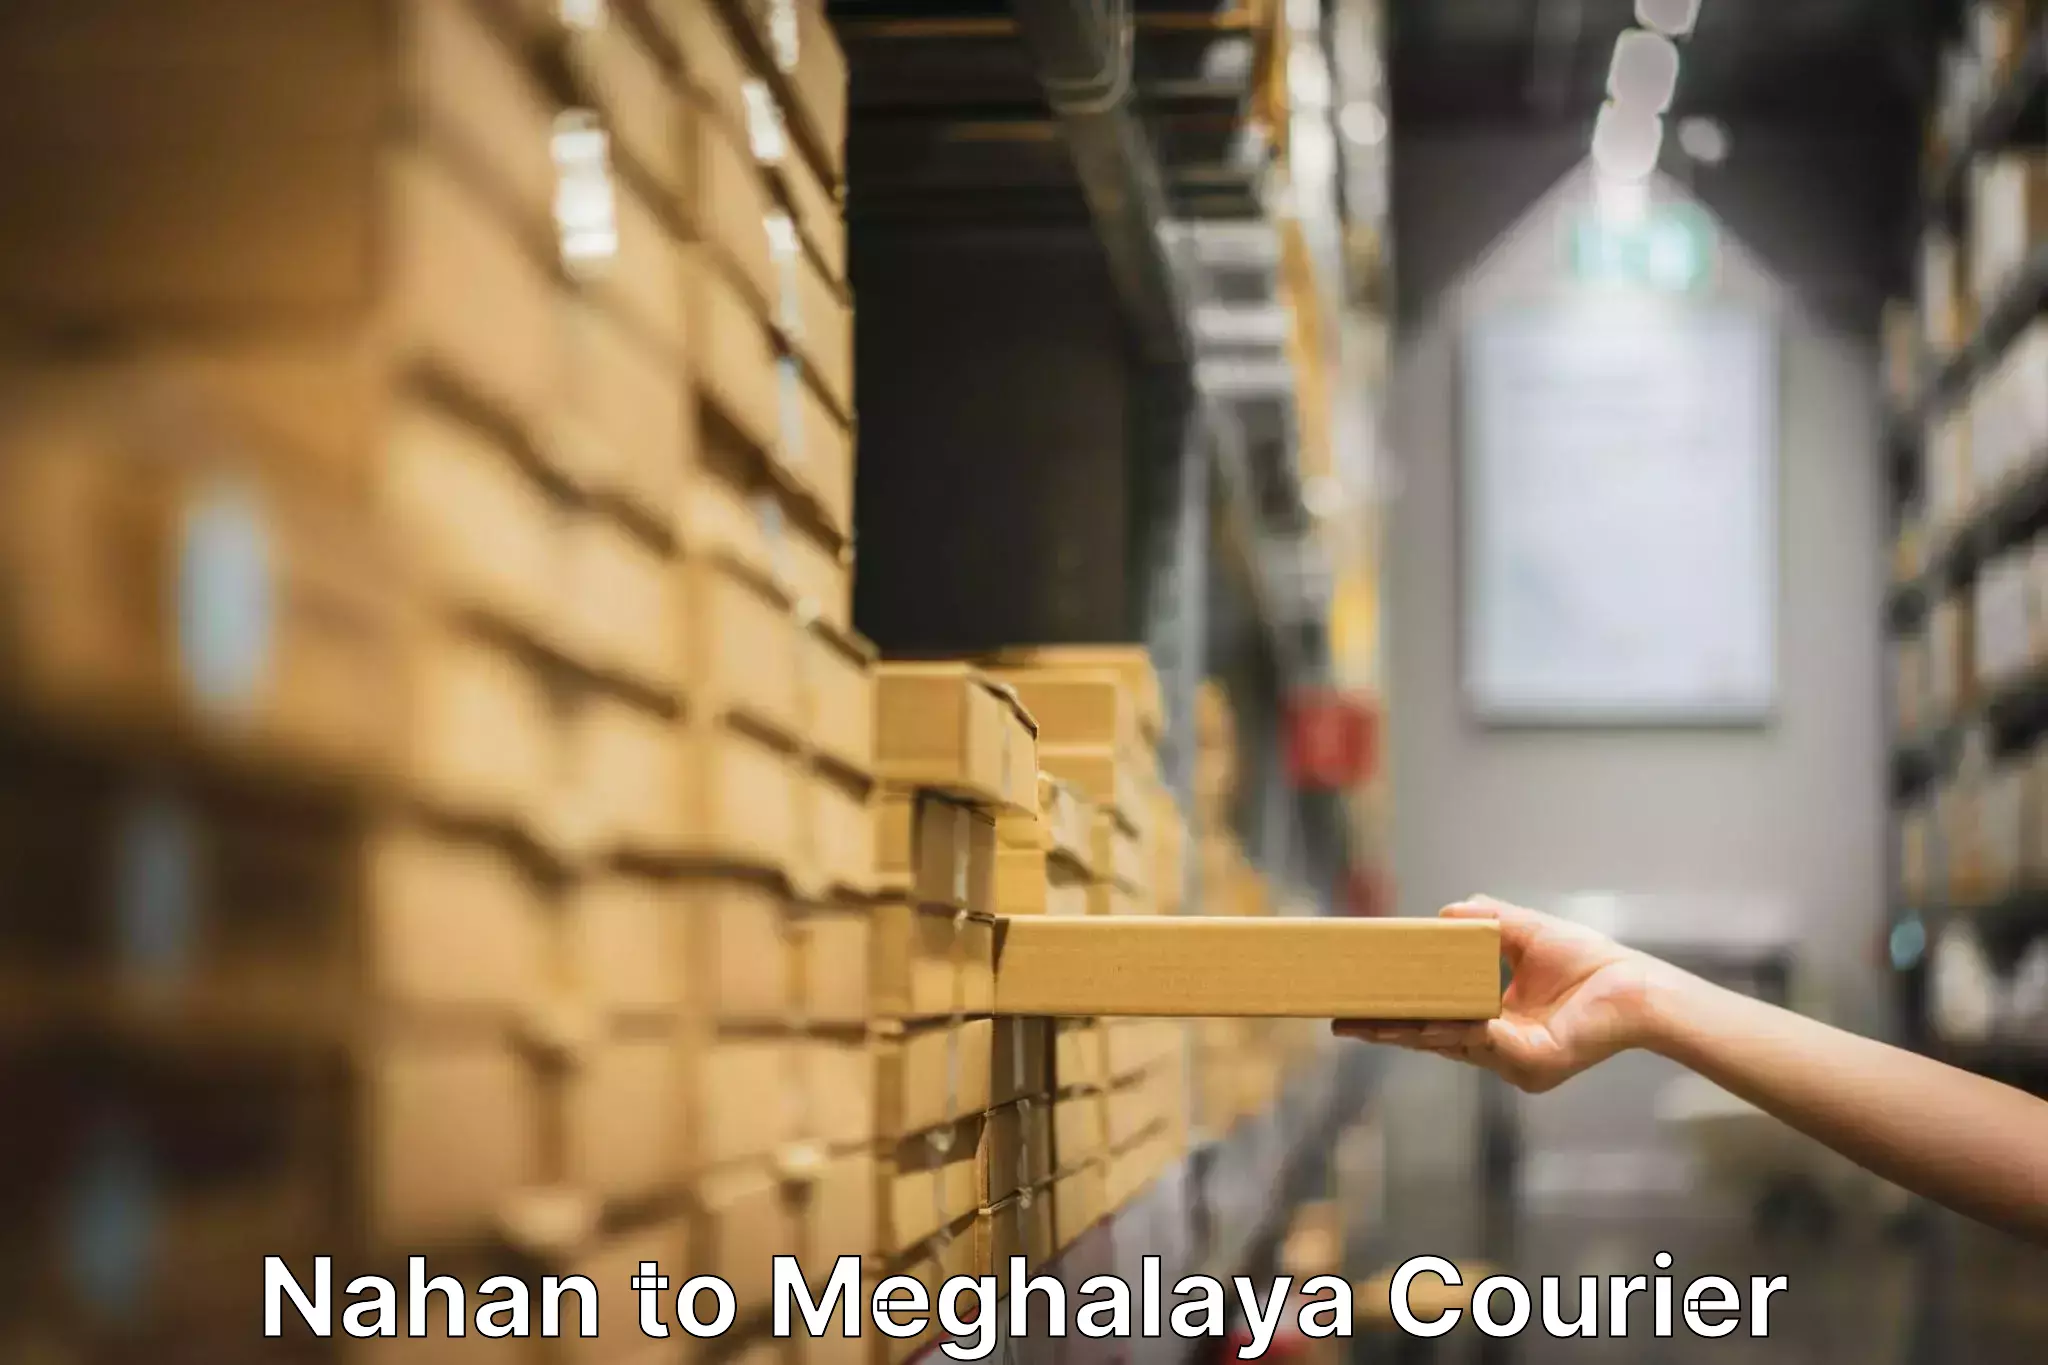 Professional furniture transport Nahan to Meghalaya